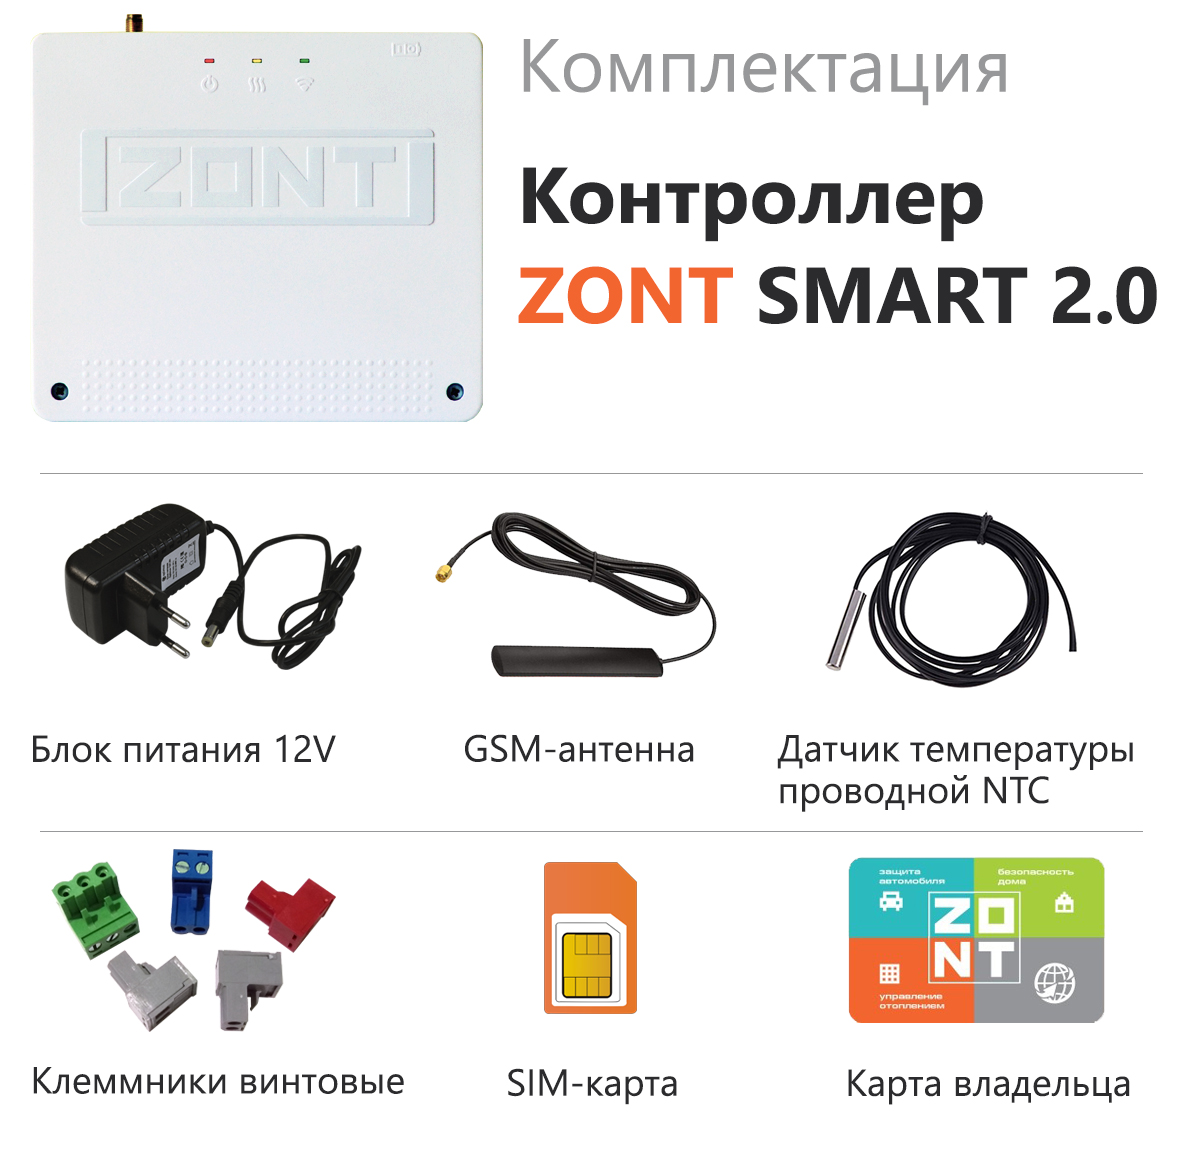 Отопительный контроллер ZONT SMART 2.0 -  по выгодной цене в .